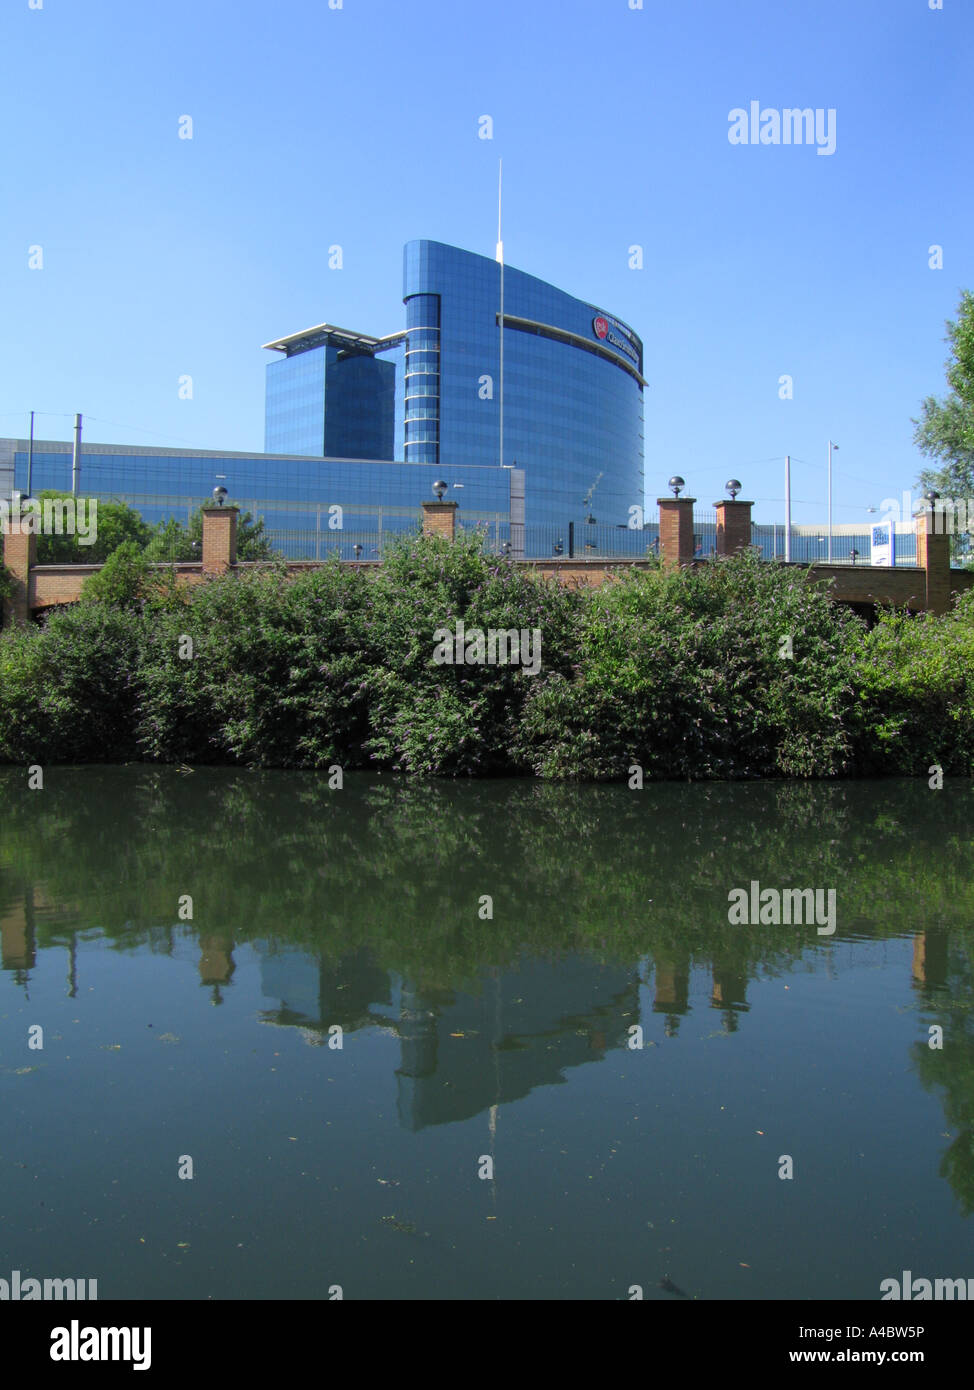 GlaxoSmithKline headquarters in Brentford London UK Stock Photo